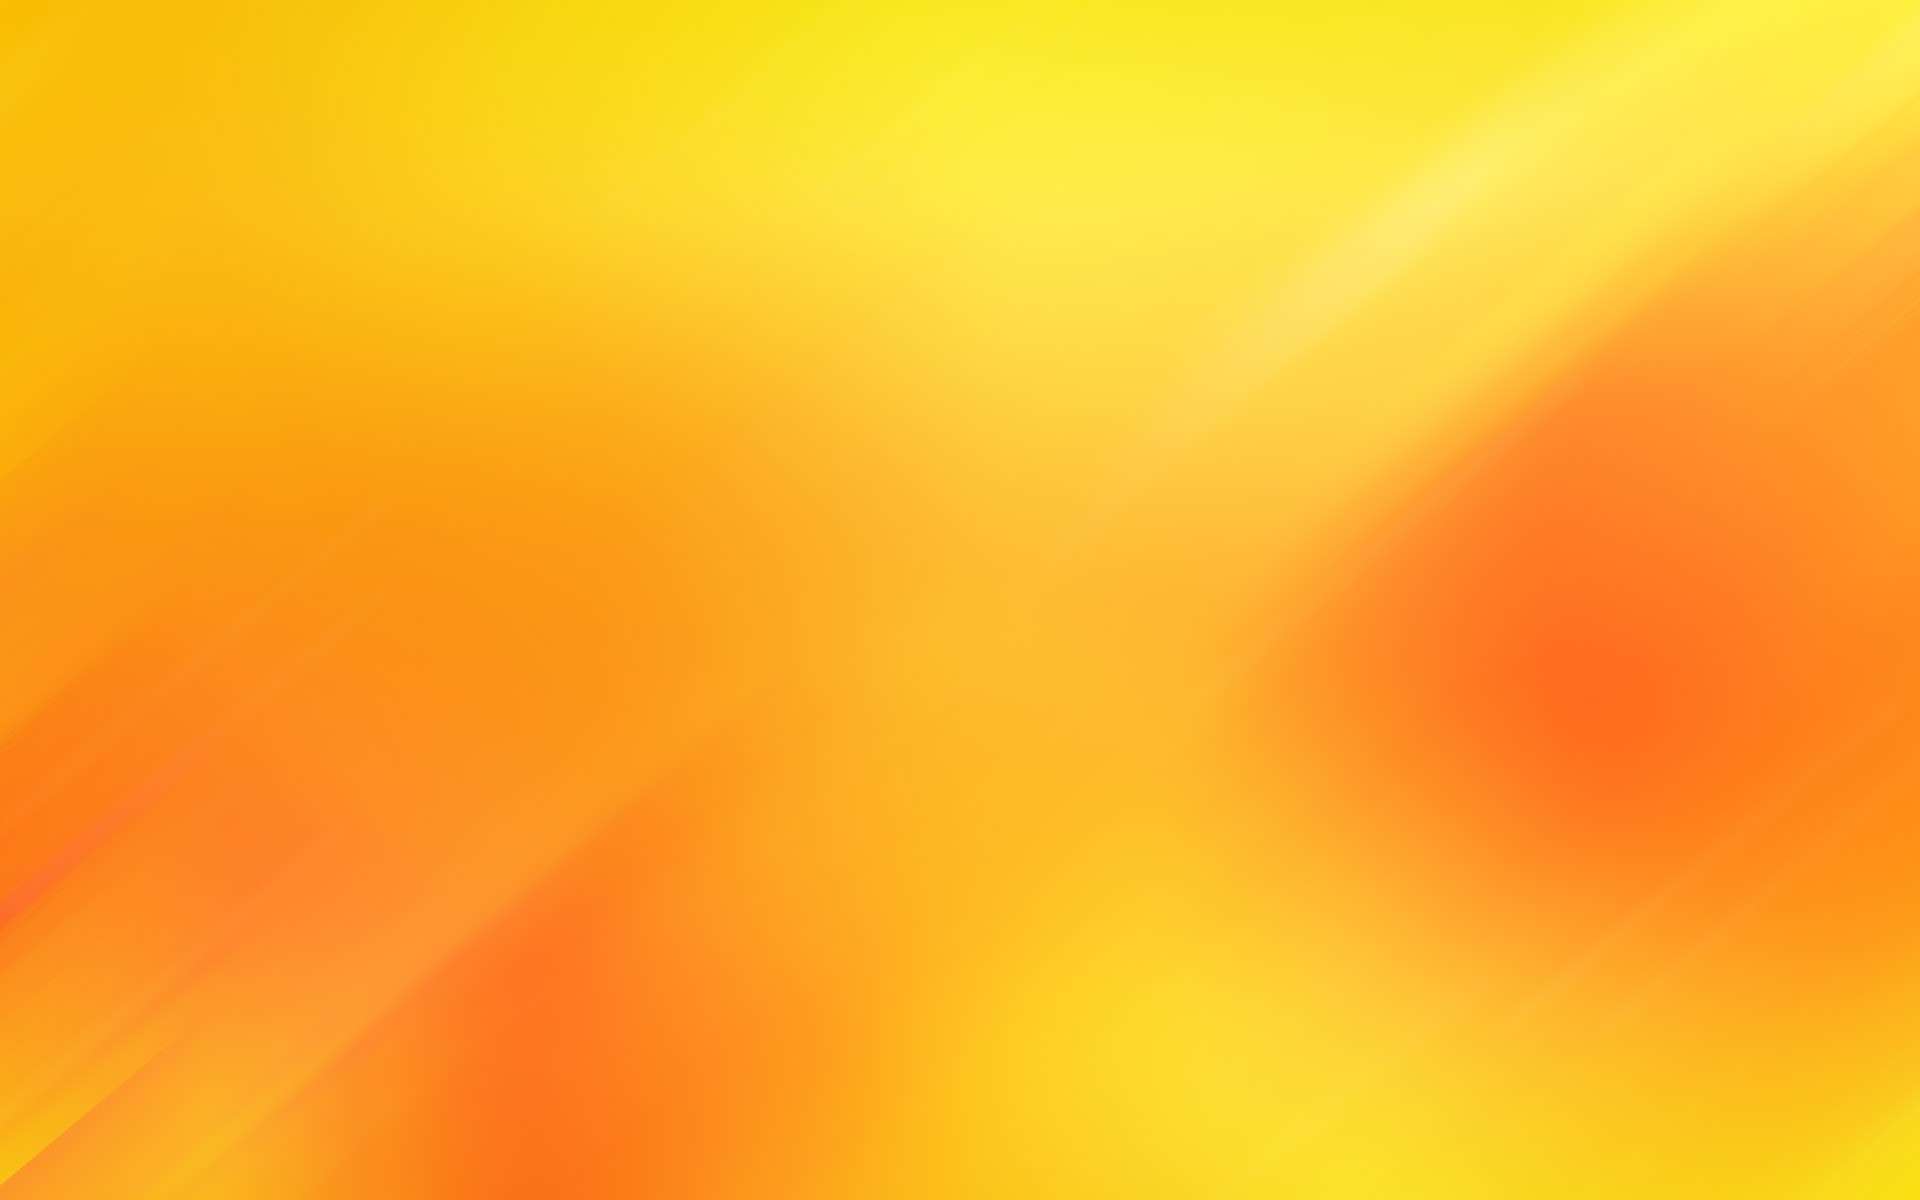 Orange Gradient Wallpaper: Bộ sưu tập hình nền Gradient màu cam sẵn sàng mang đến cho bạn một trải nghiệm thị giác đầy sống động. Với các hiệu ứng khác nhau trên nền màu cam, hình ảnh Gradient này sẽ cho phép bạn tận hưởng một màn hình mang đậm tính cá nhân và sáng tạo. Thưởng thức bức tranh nền Gradient này ngay bây giờ.